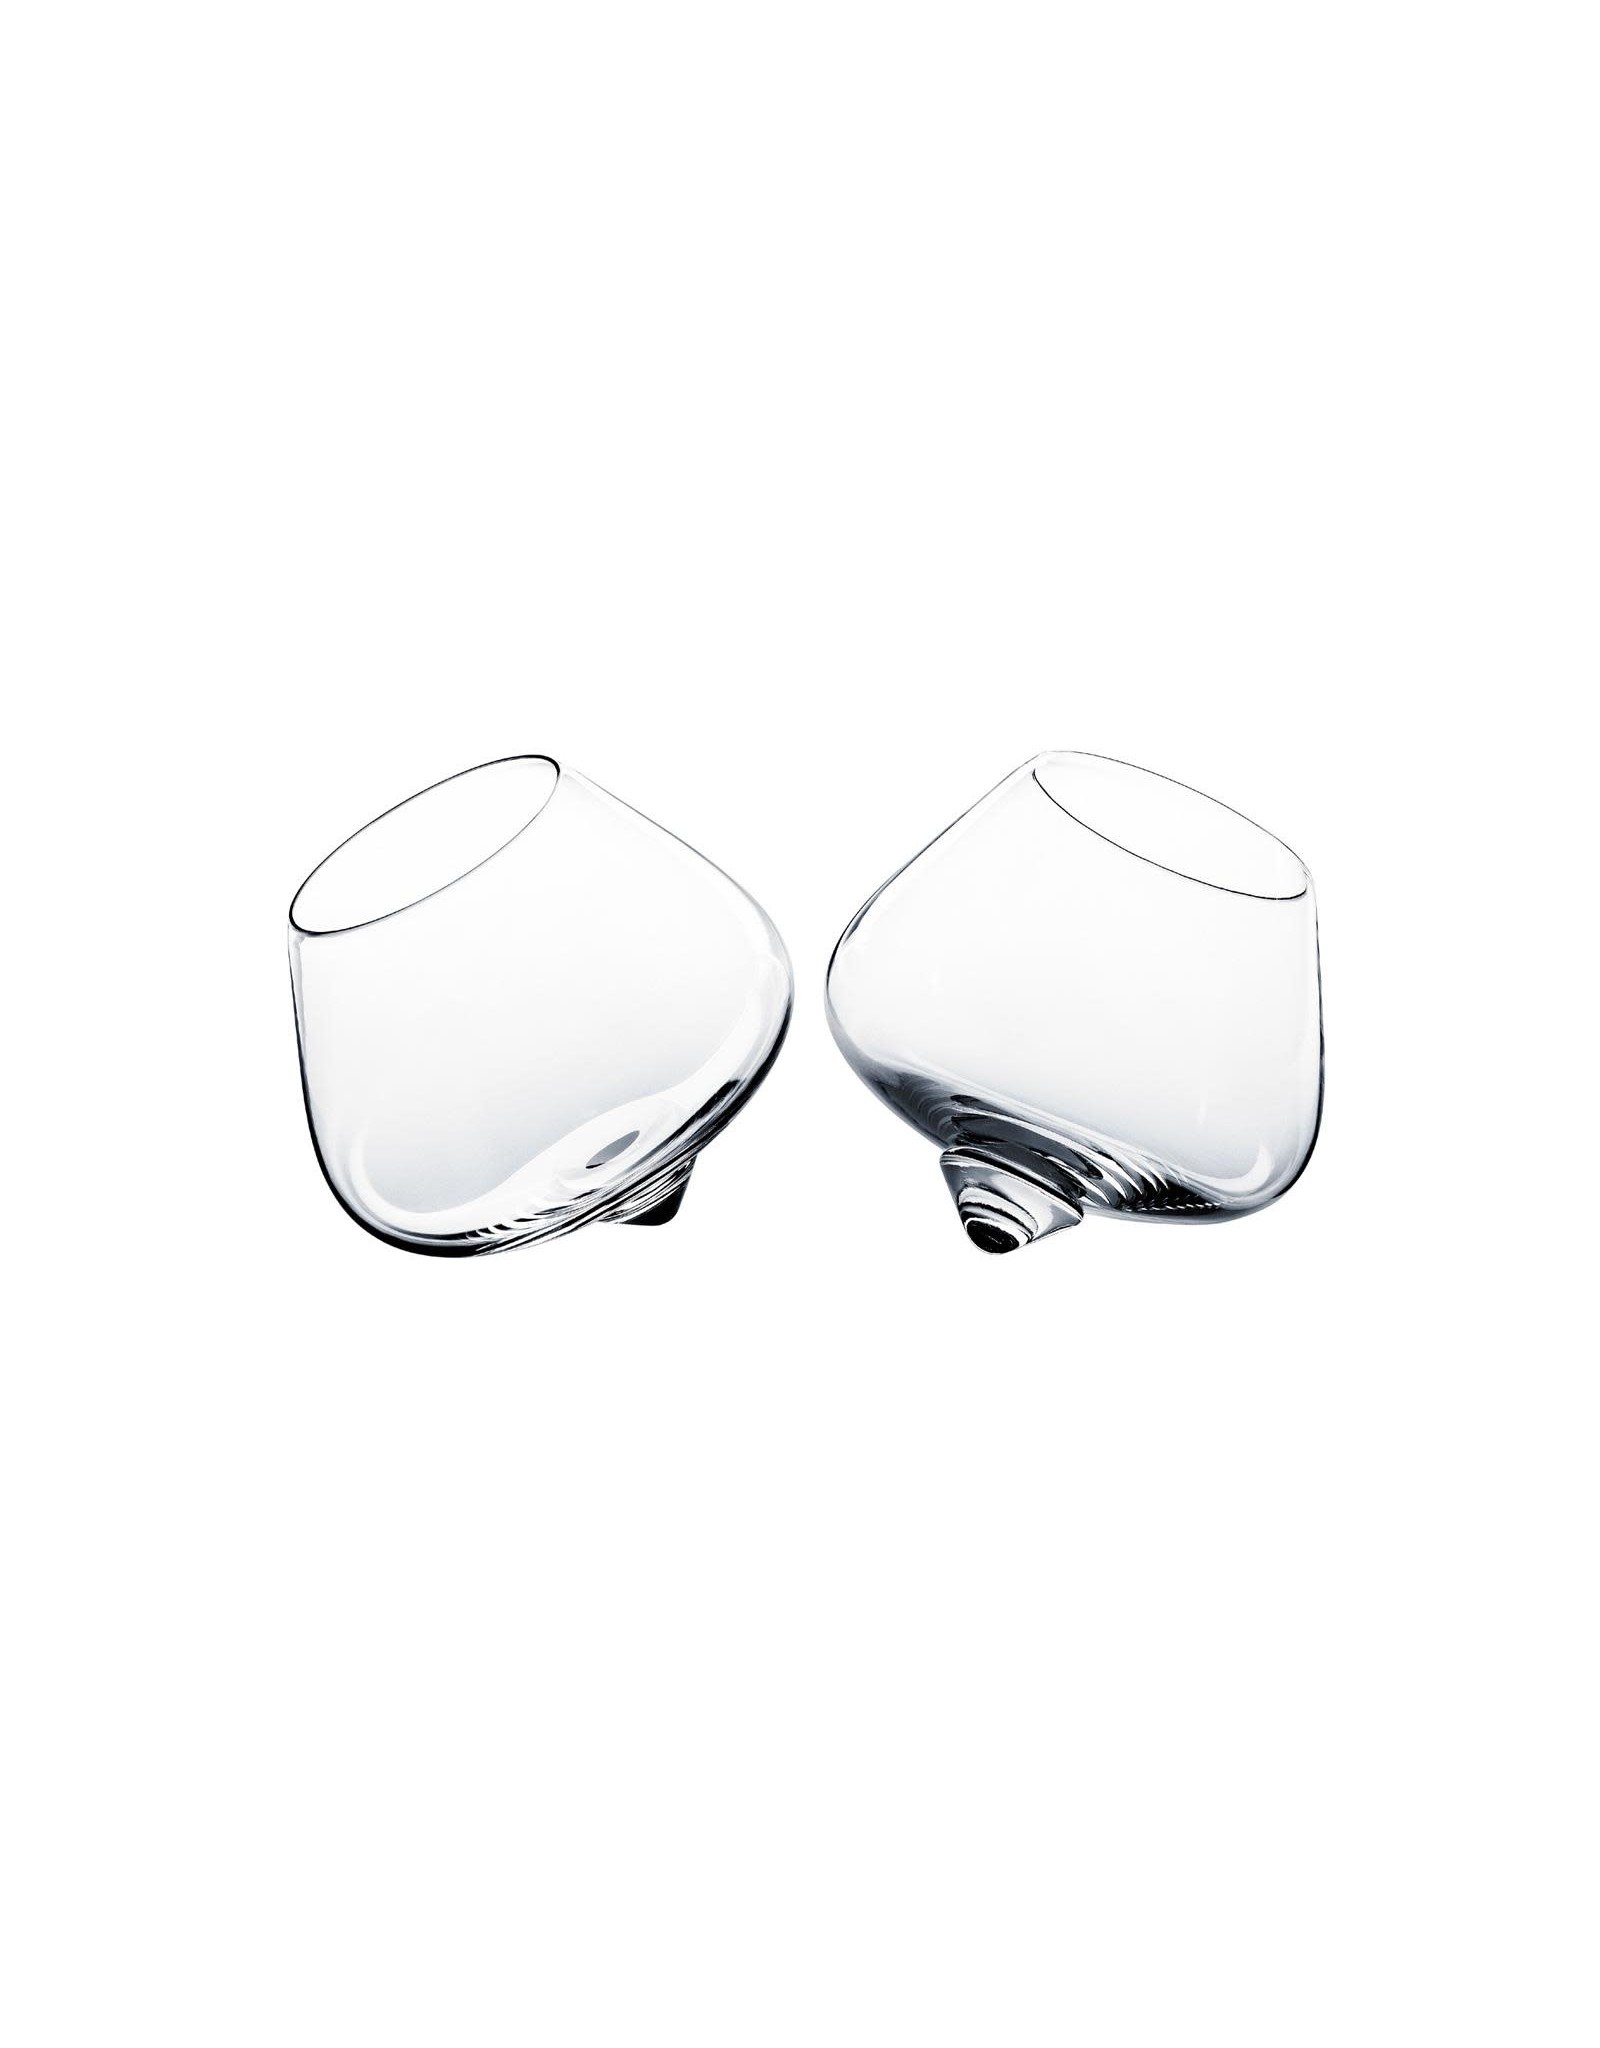 Normann Copenhagen Cognac Glass - 2Pcs 25 cl Glass